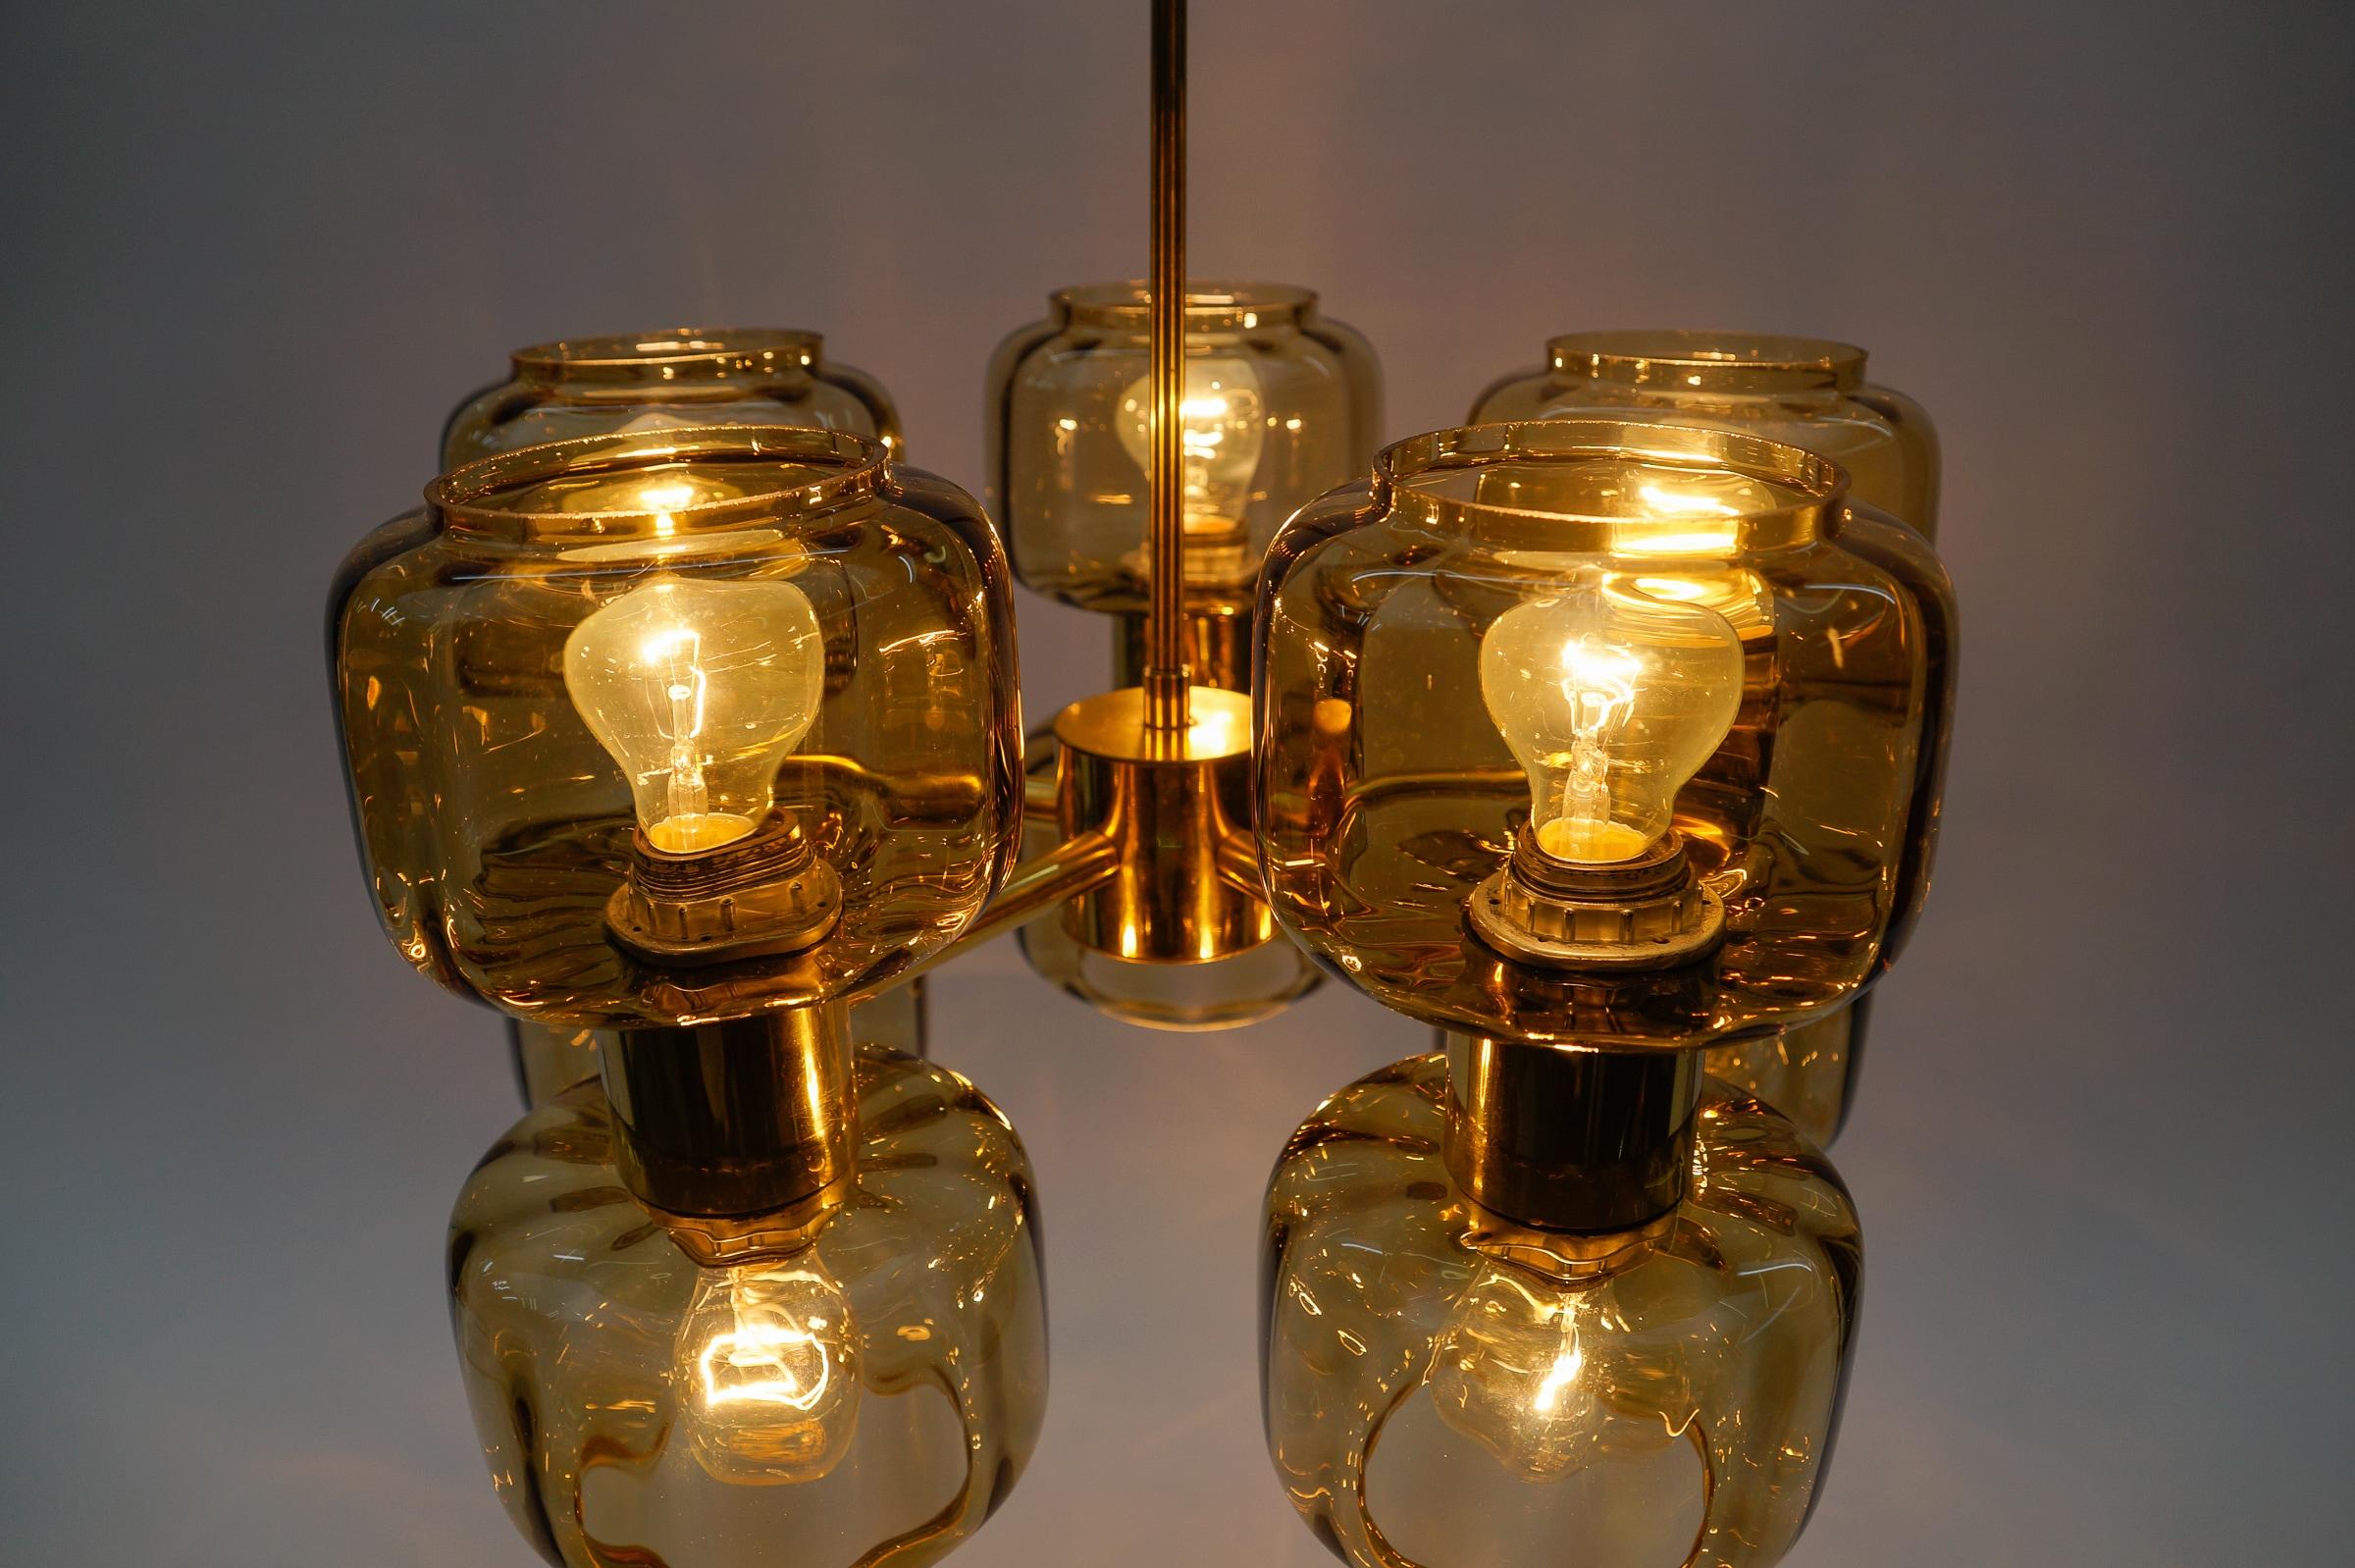 Space Age Golden 10-Light Sputnik Lamp, 1960s For Sale 1